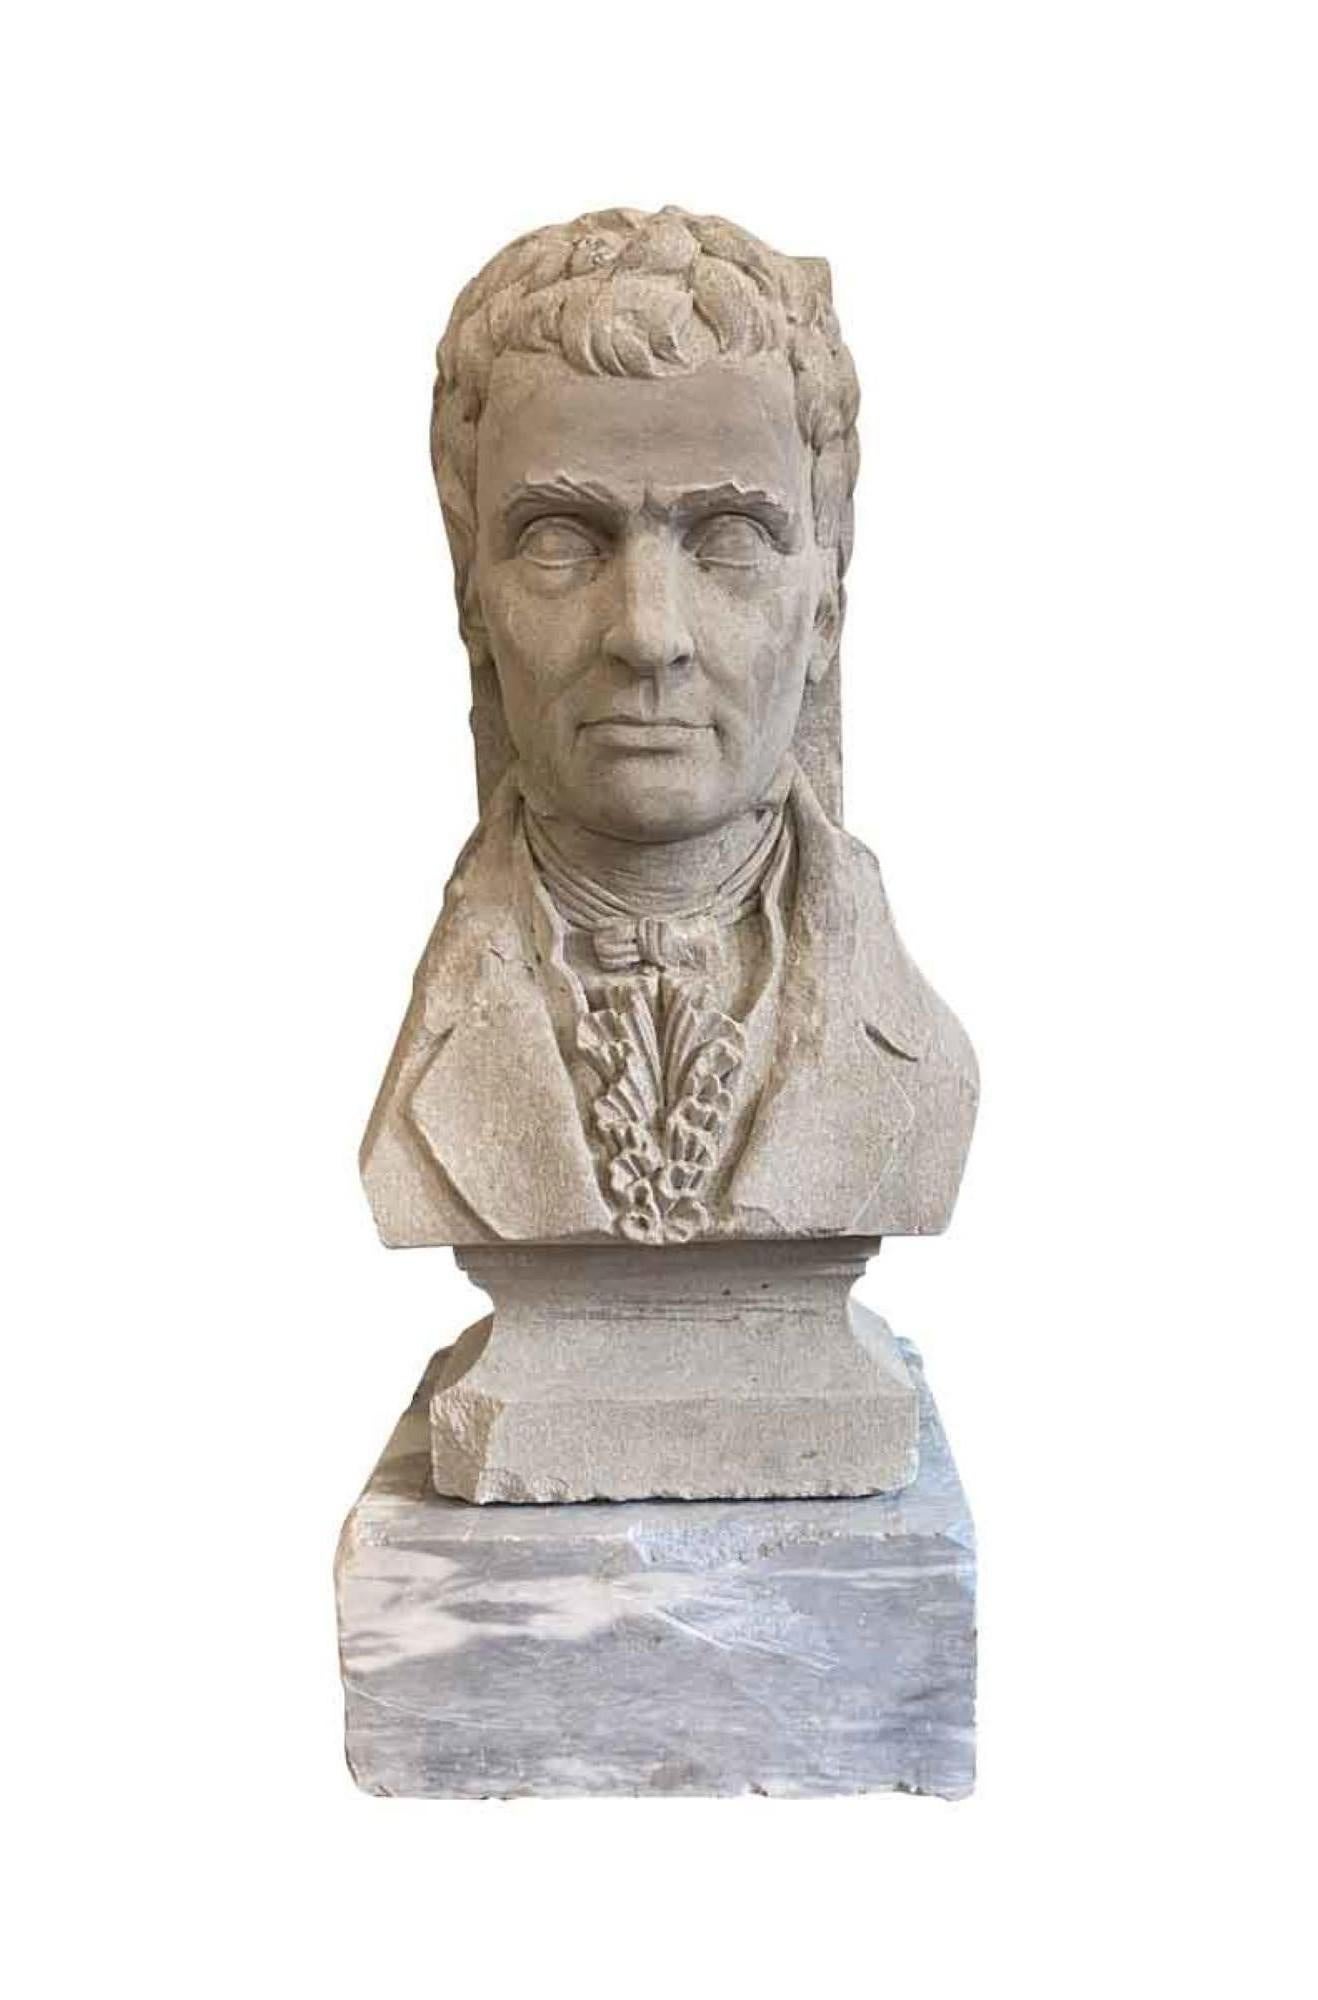 Diese stattliche, handgeschnitzte Büste aus Kalkstein aus dem Jahr 1931 stellt Robert Fulton (14. November 1765 - 25. Februar 1815) dar, einen Ingenieur und Erfinder, der vor allem für die Entwicklung des Dampfschiffs bekannt war und einen großen